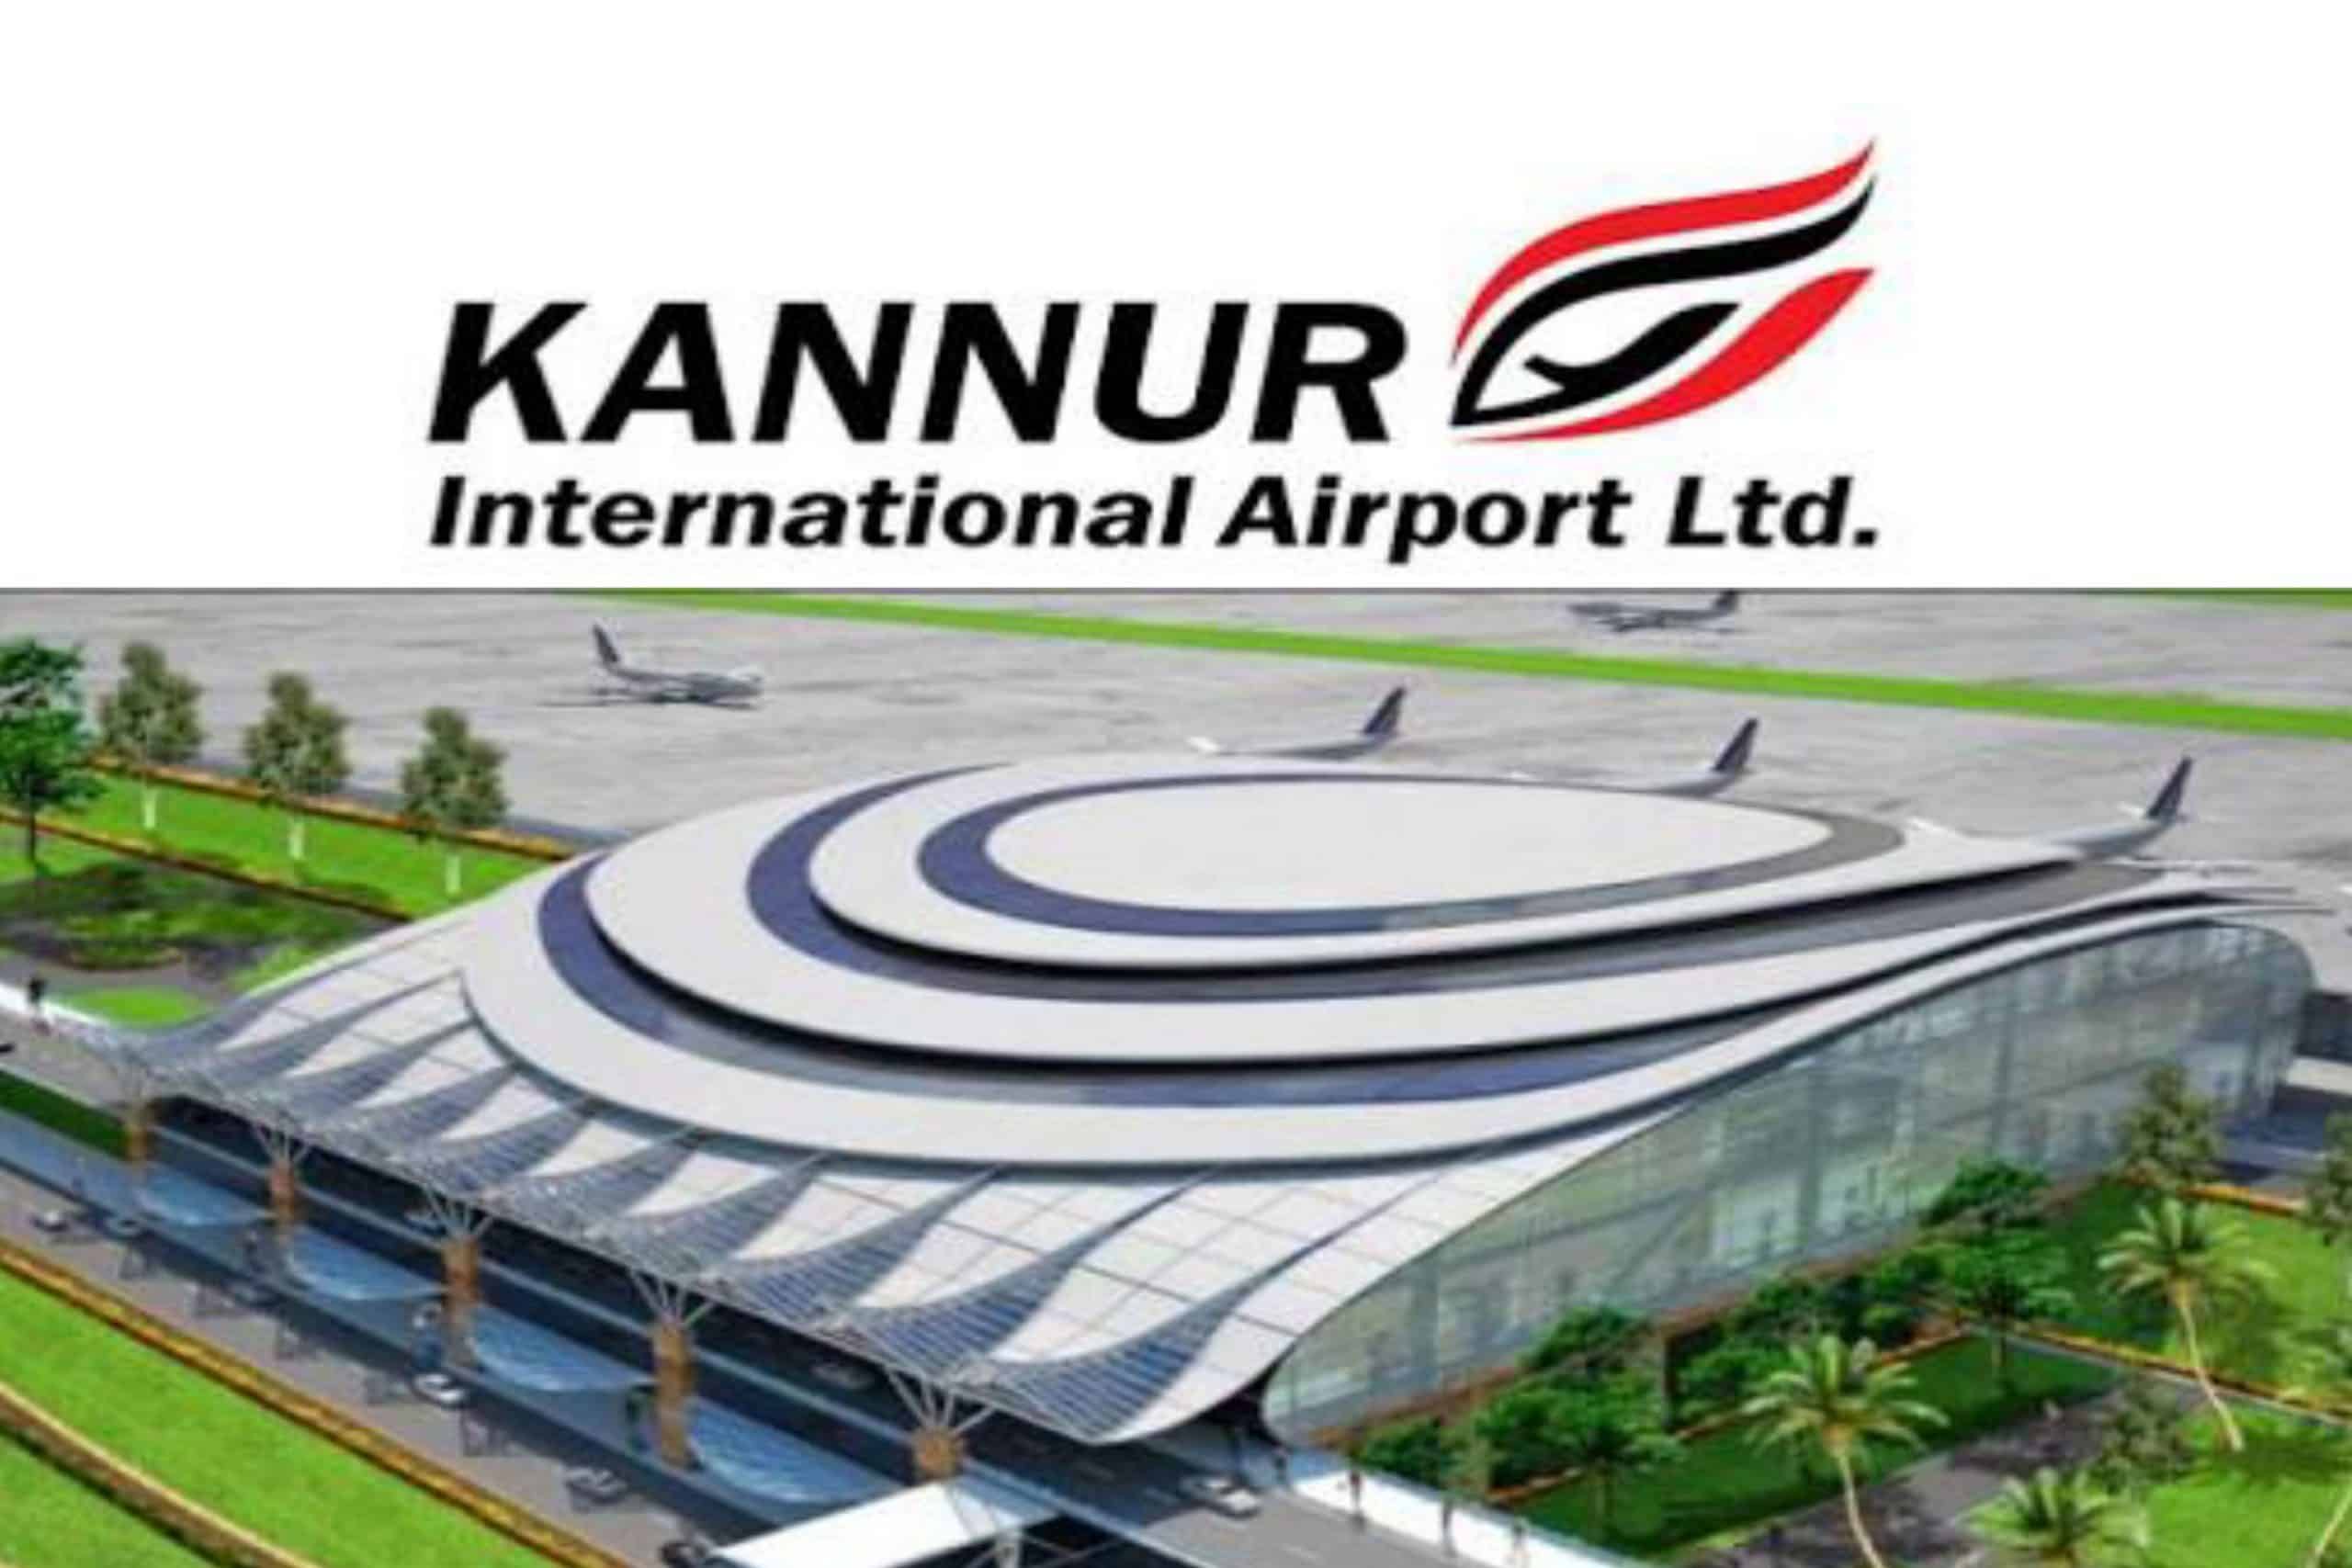 Kannur International Airport Recruitment 2021